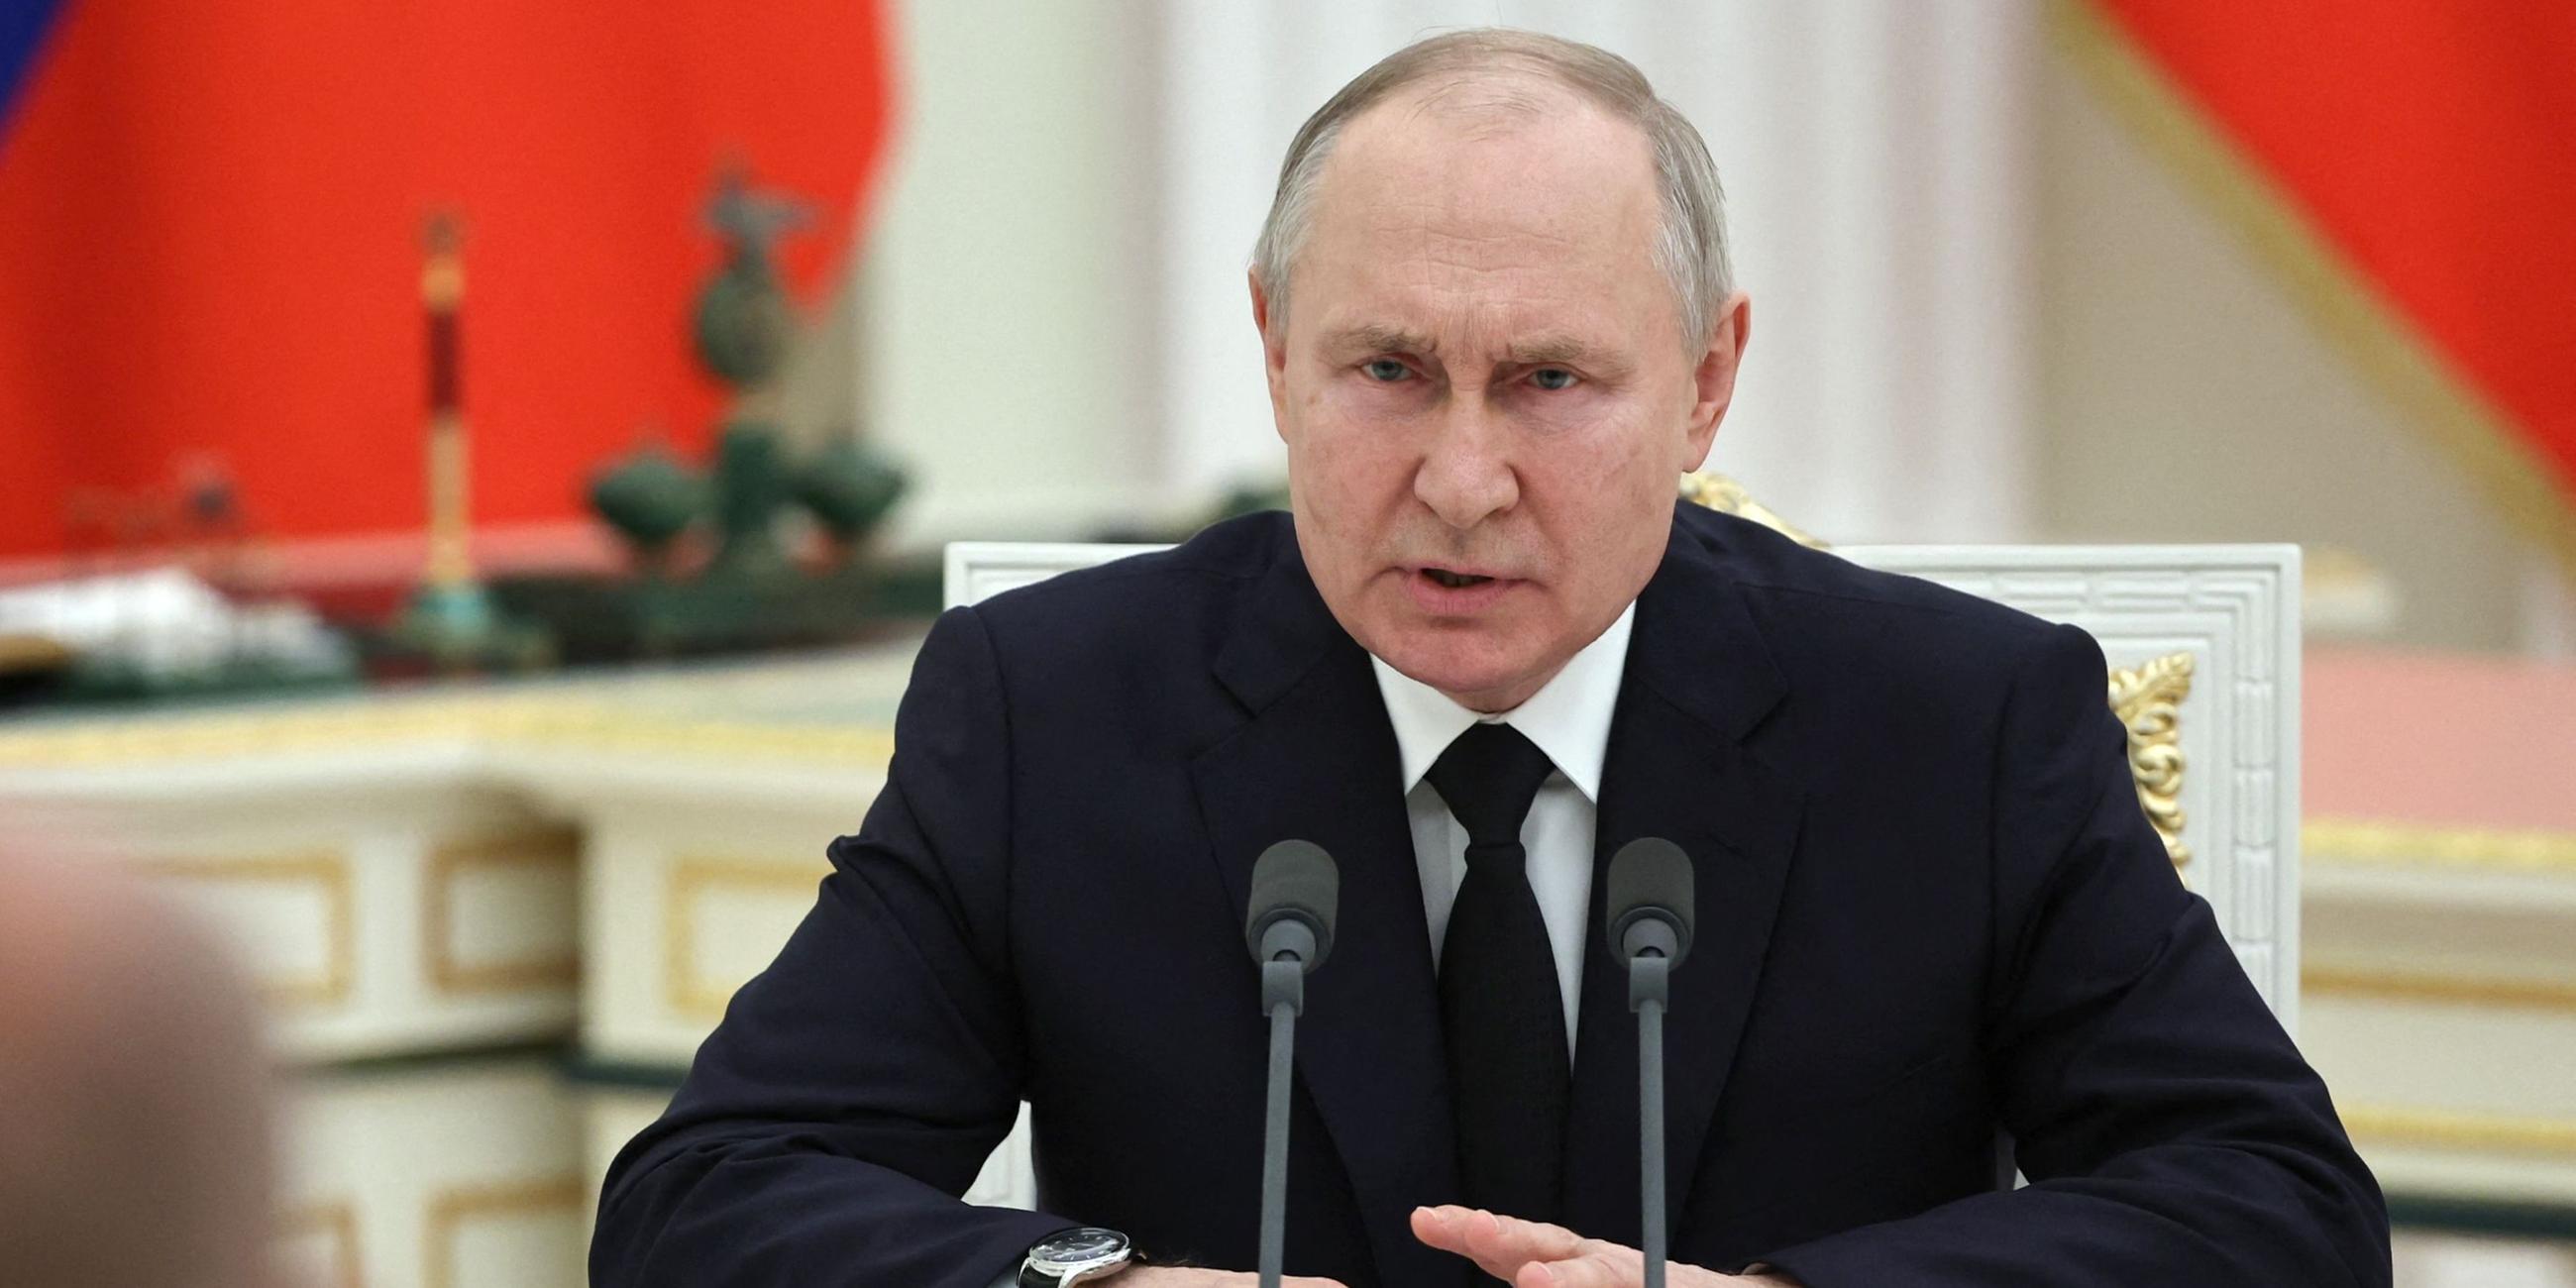 Putin bei seiner Rede zum versuchten Putschversuch, vor ihm zwei Mikrofone